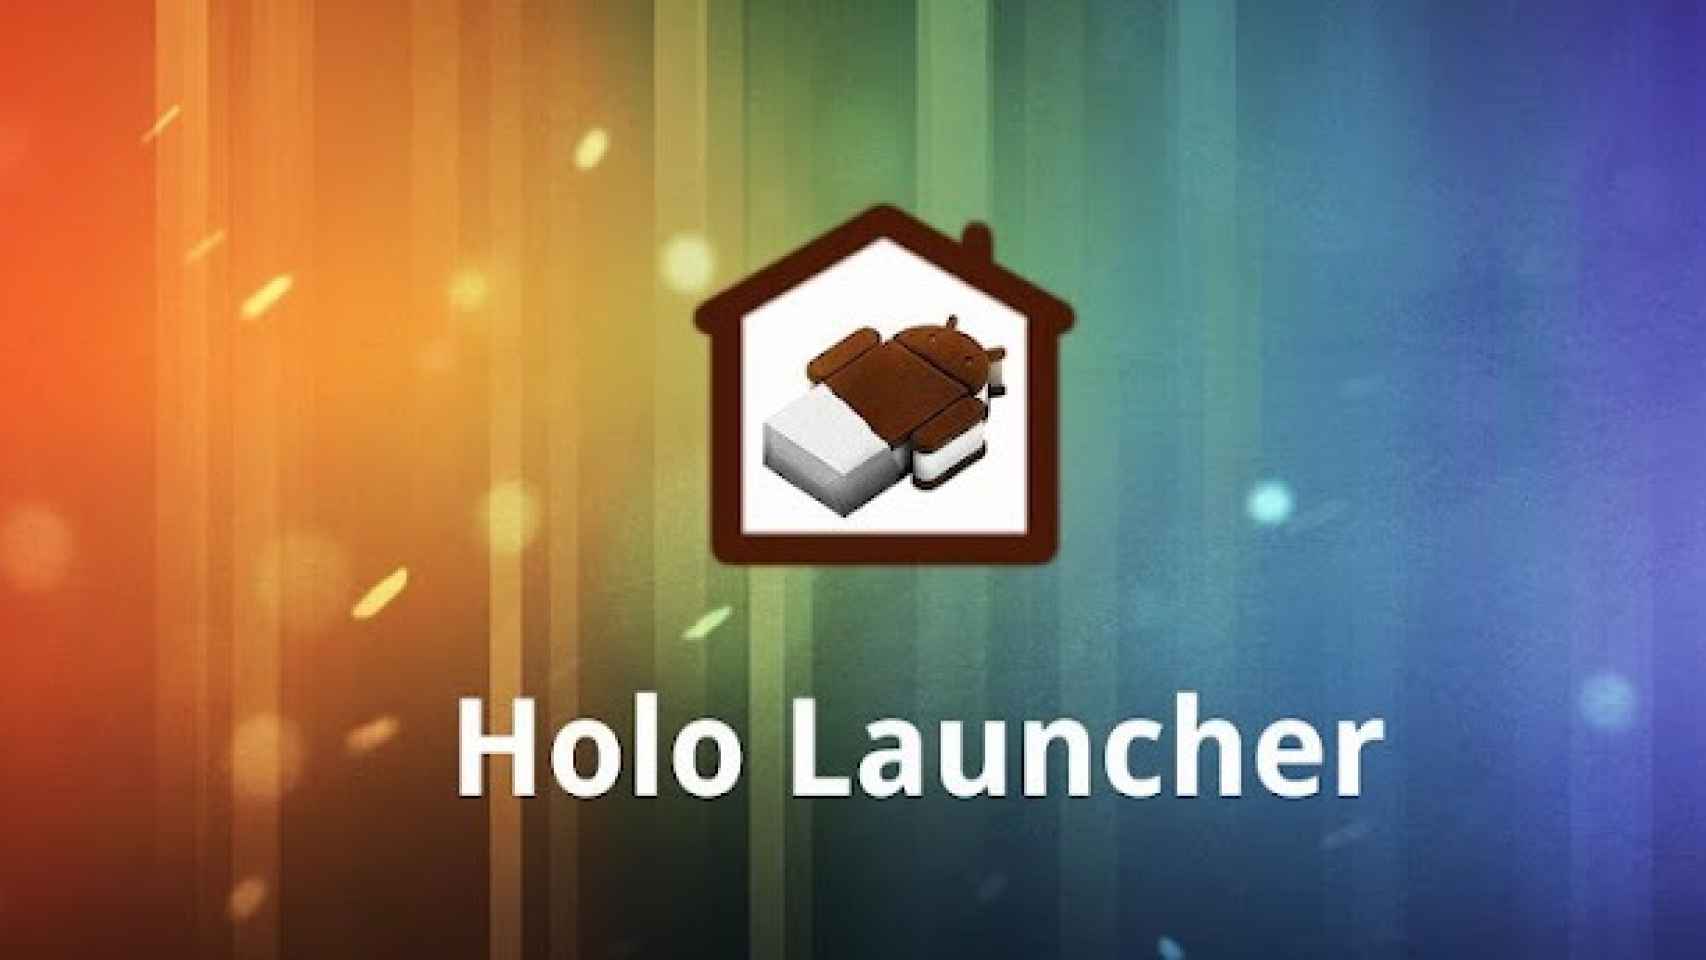 La interfaz de Ice Cream Sandwich llega a todos los Android con Holo Launcher